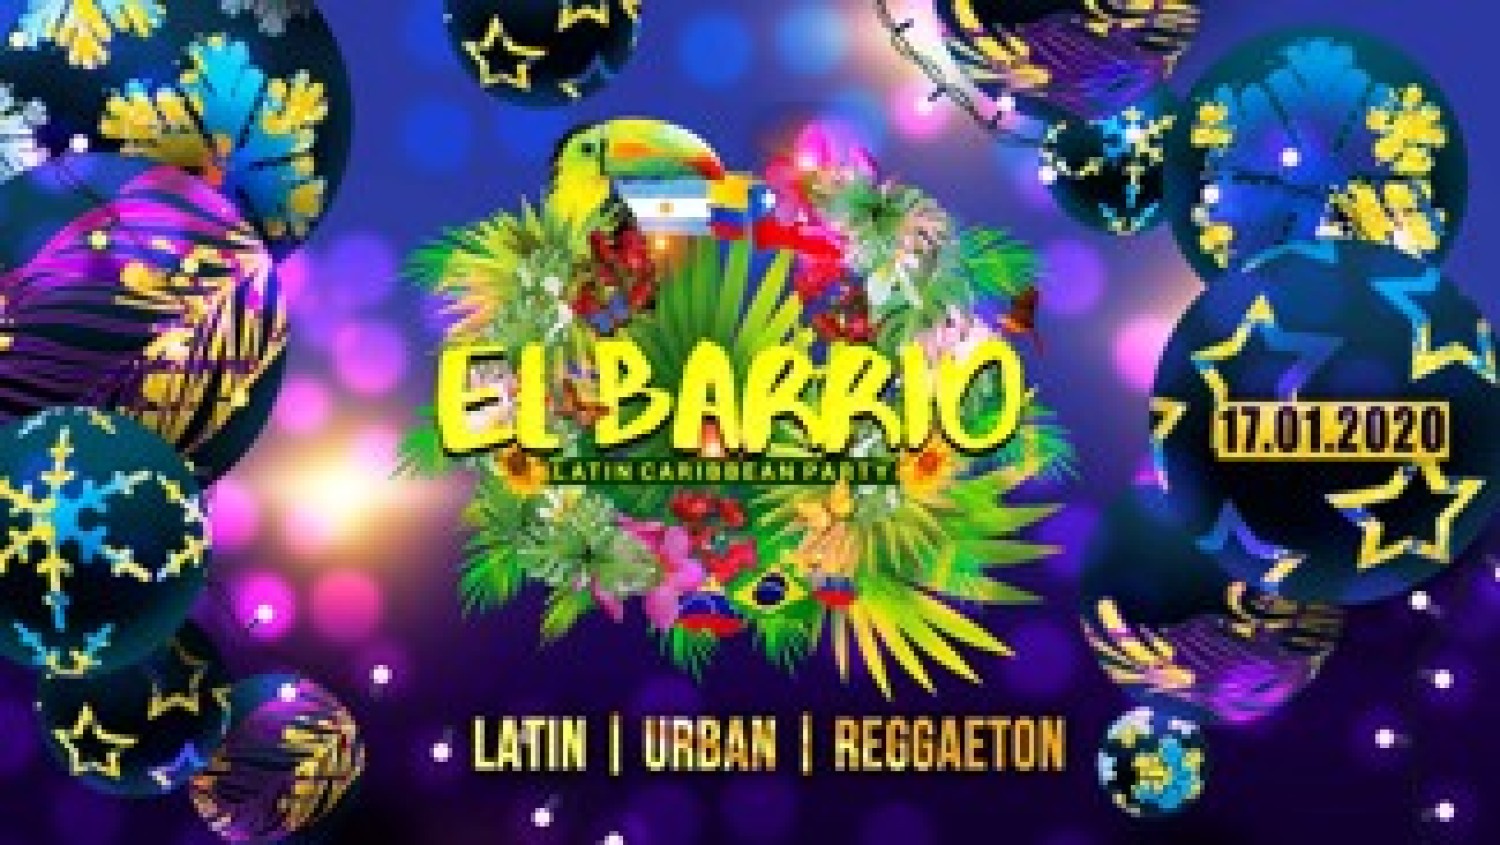 Party nieuws: Ook in 2020 geniet je van latin muziek op El Barrio